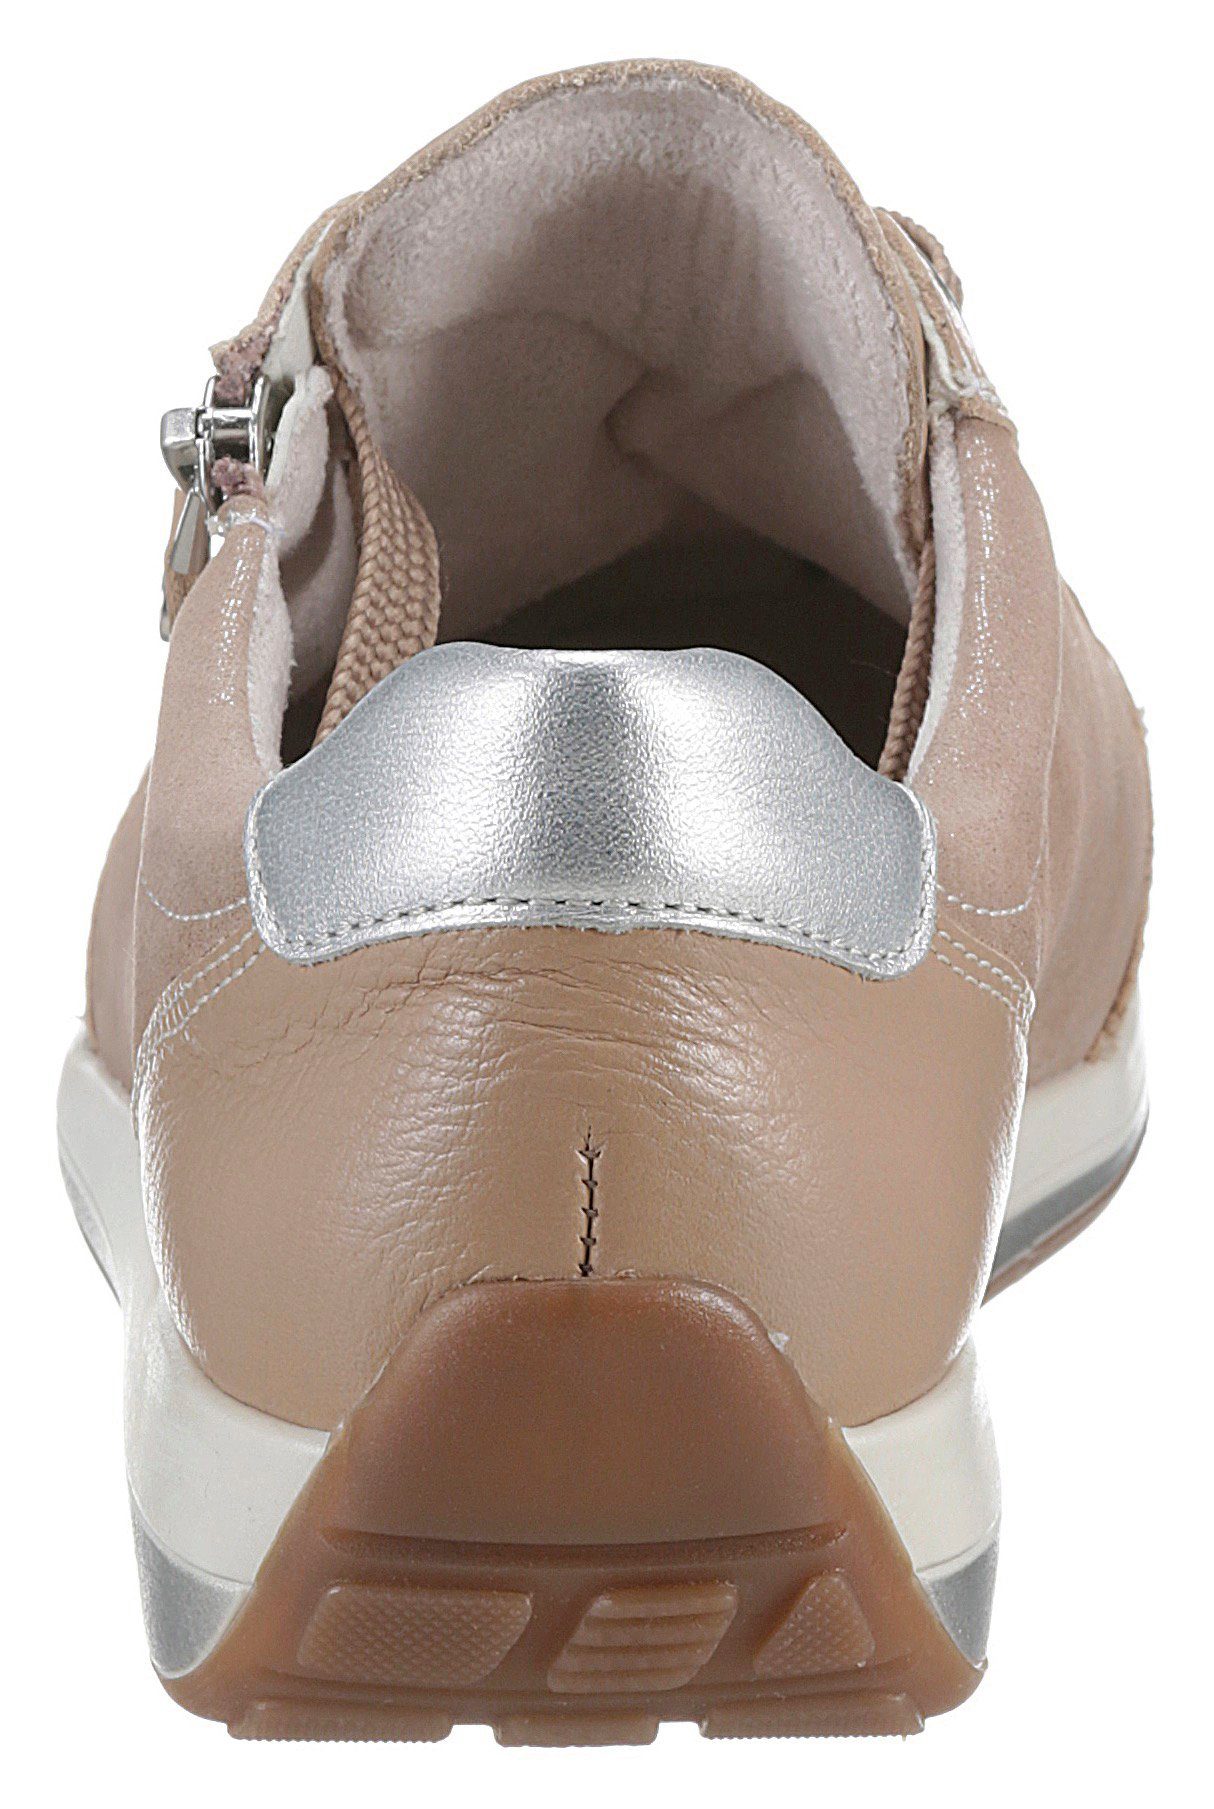 G-Weite geeignet, für eigene Sneaker OSAKA Ara Einlagen sand-silberfarben